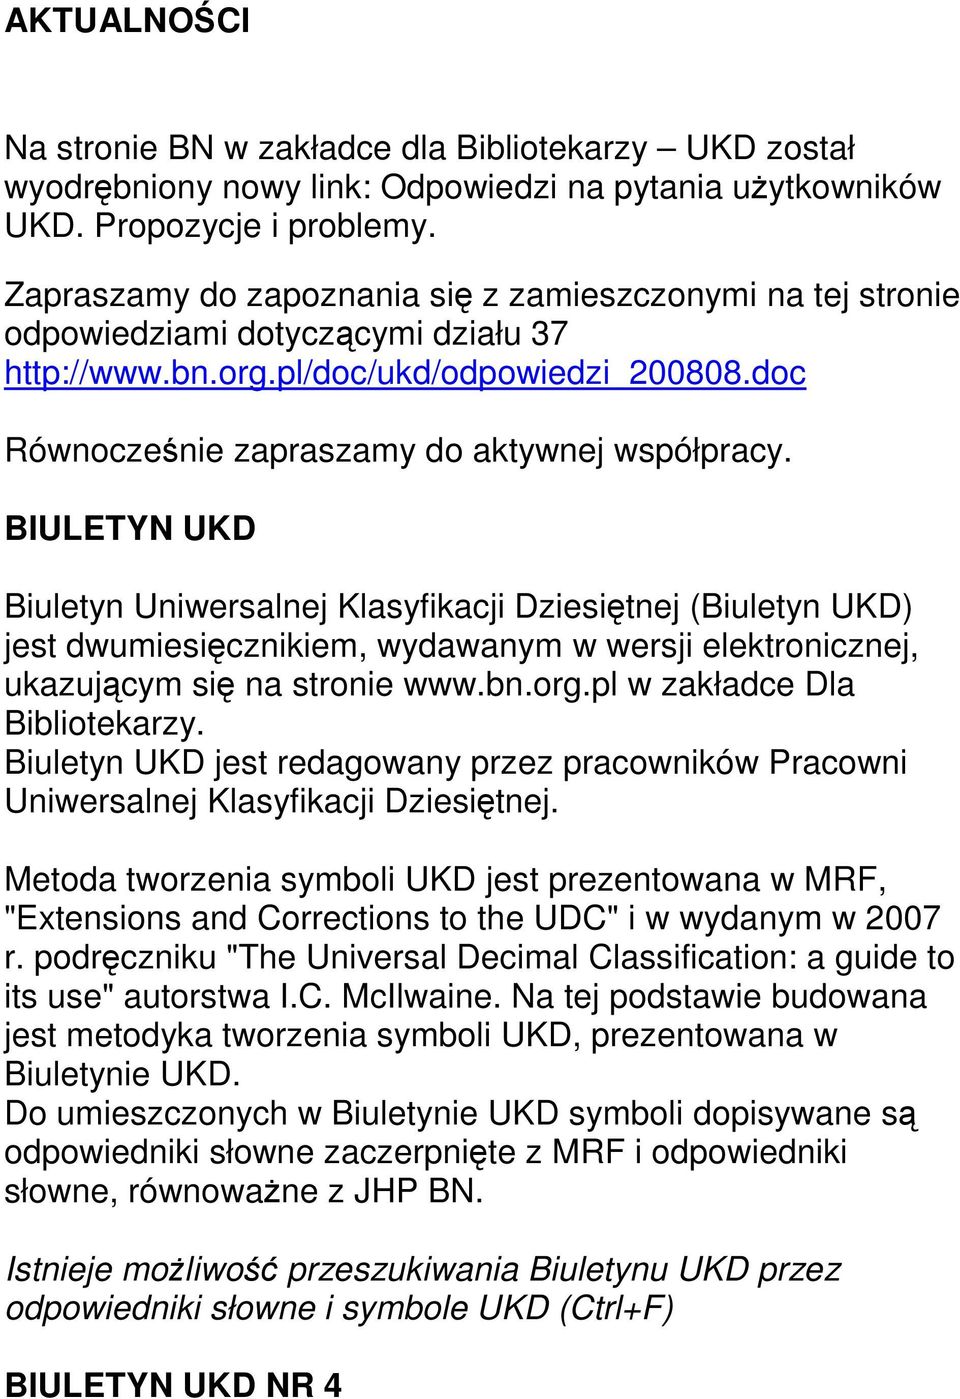 BIULETYN UKD Biuletyn Uniwersalnej Klasyfikacji Dziesiętnej (Biuletyn UKD) jest dwumiesięcznikiem, wydawanym w wersji elektronicznej, ukazującym się na stronie www.bn.org.